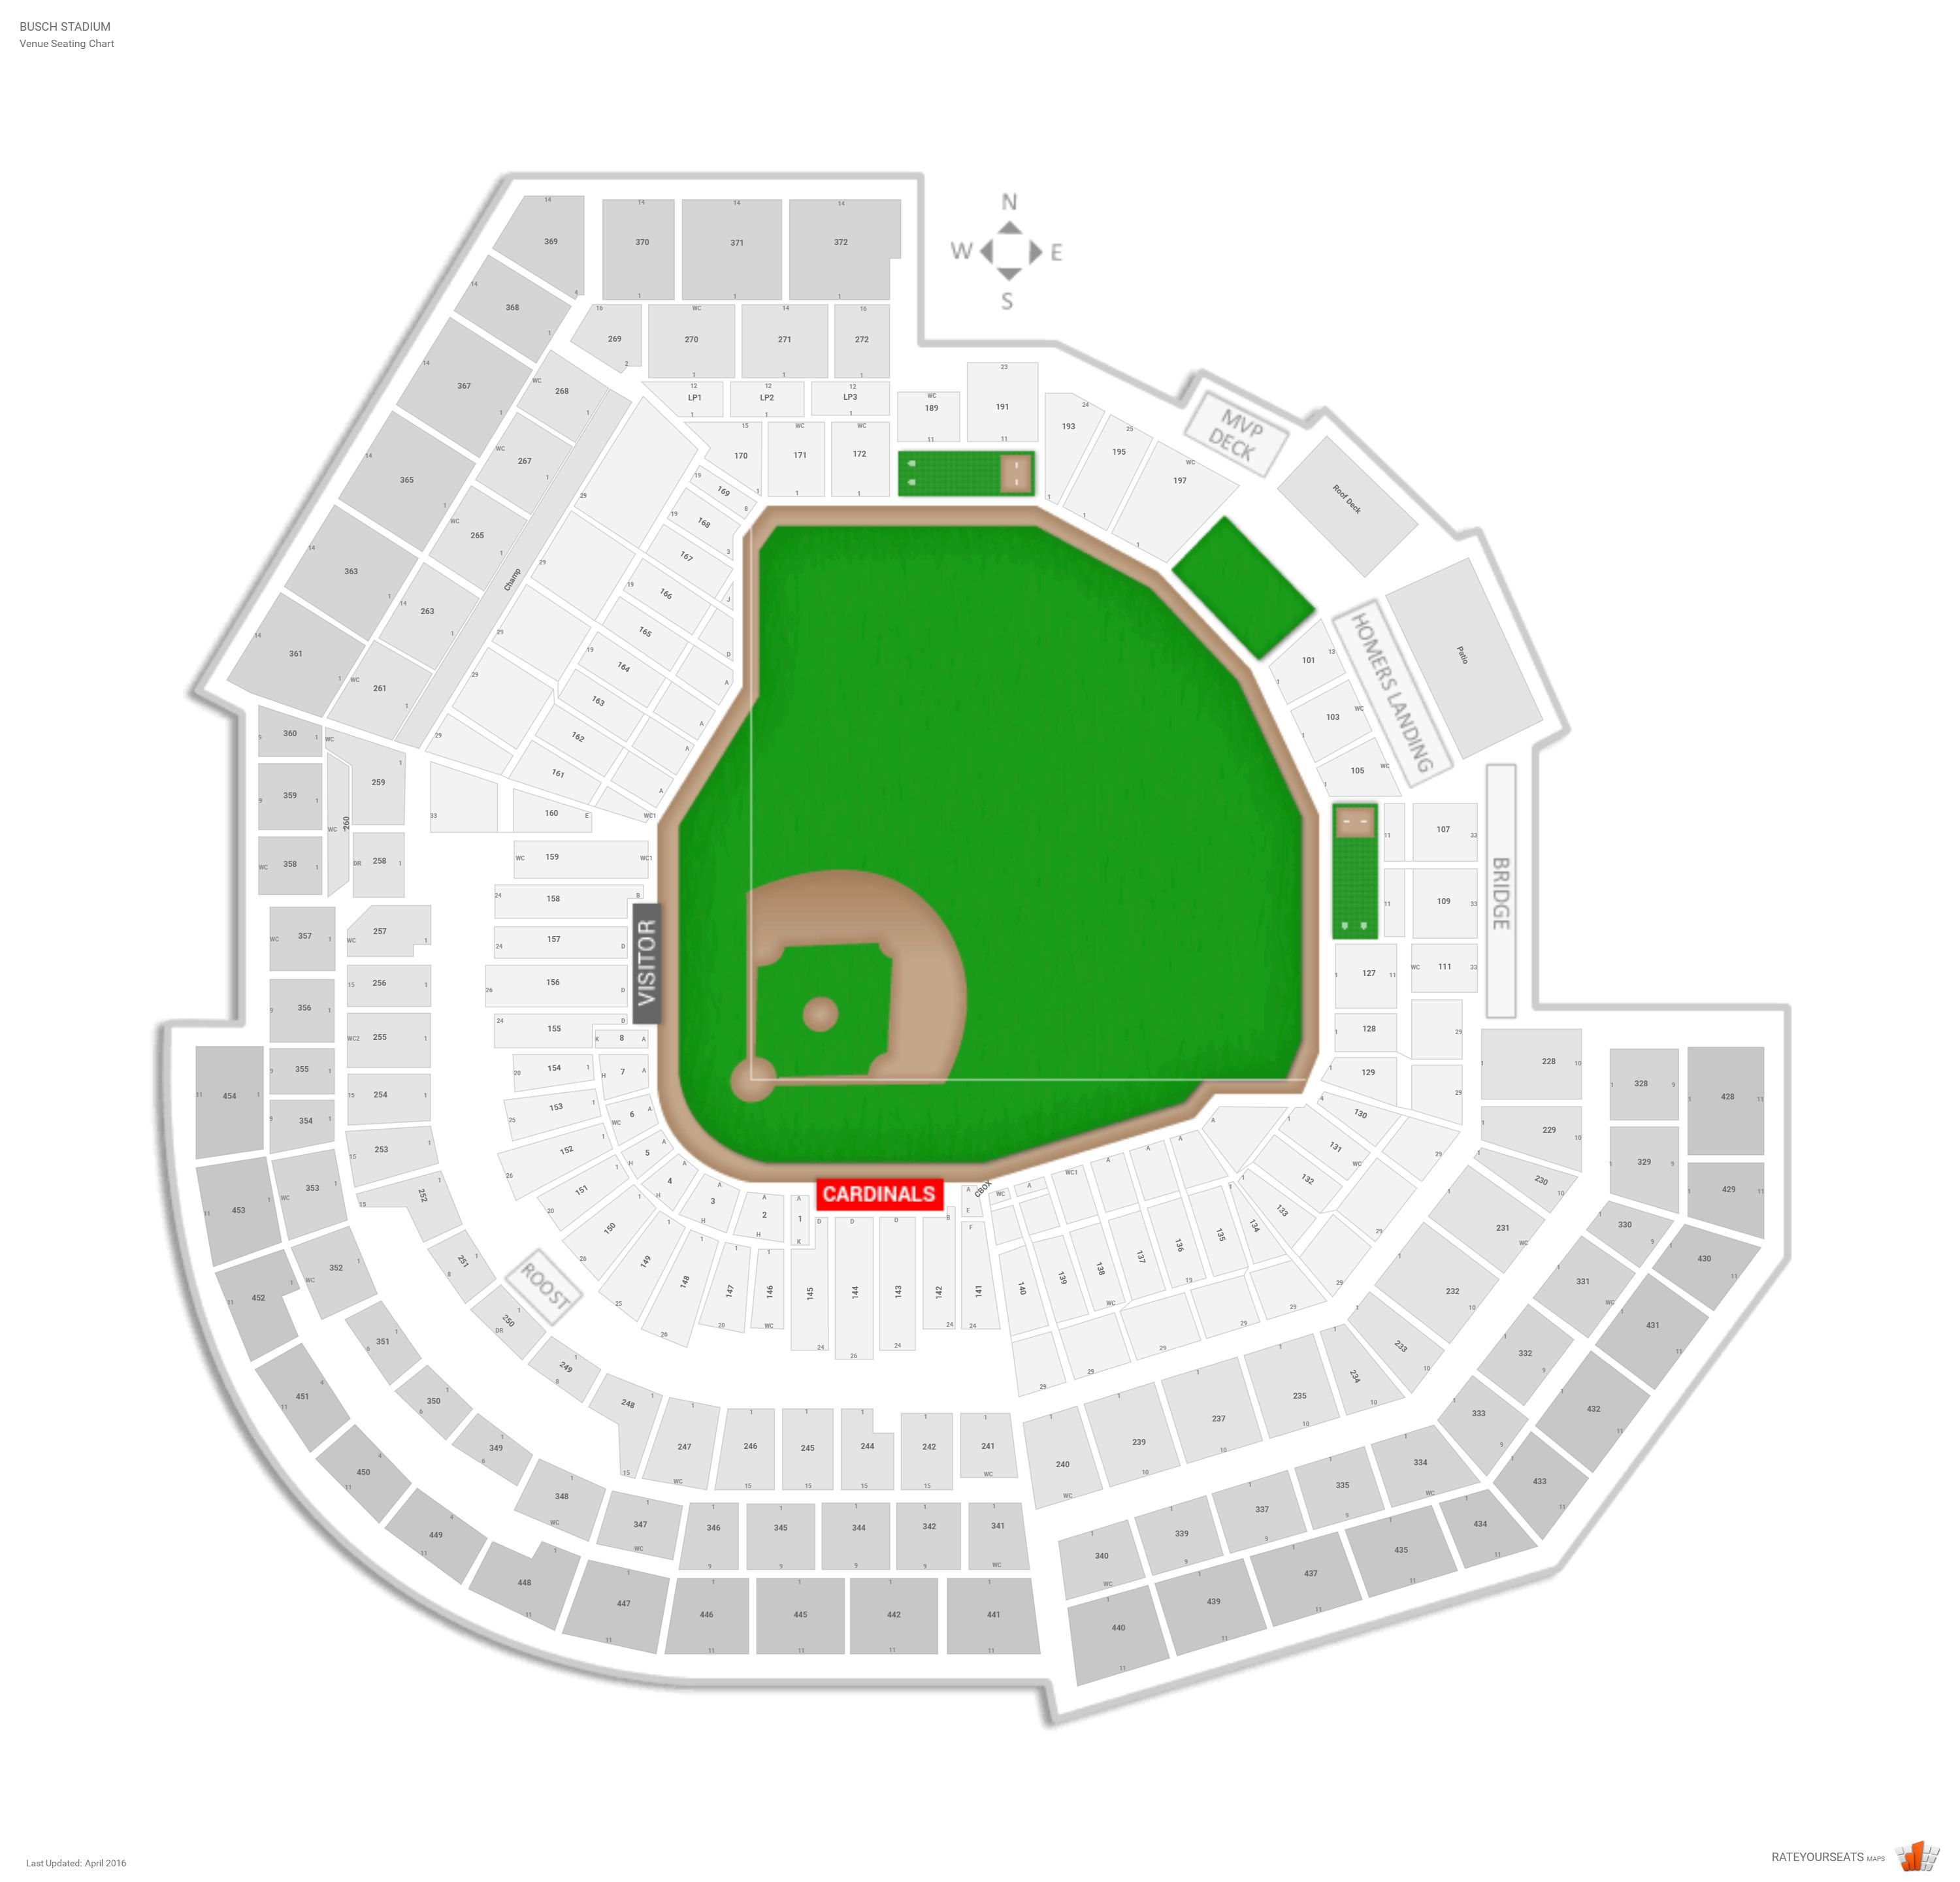 St. Louis Cardinals Seating Guide - Busch Stadium - literacybasics.ca